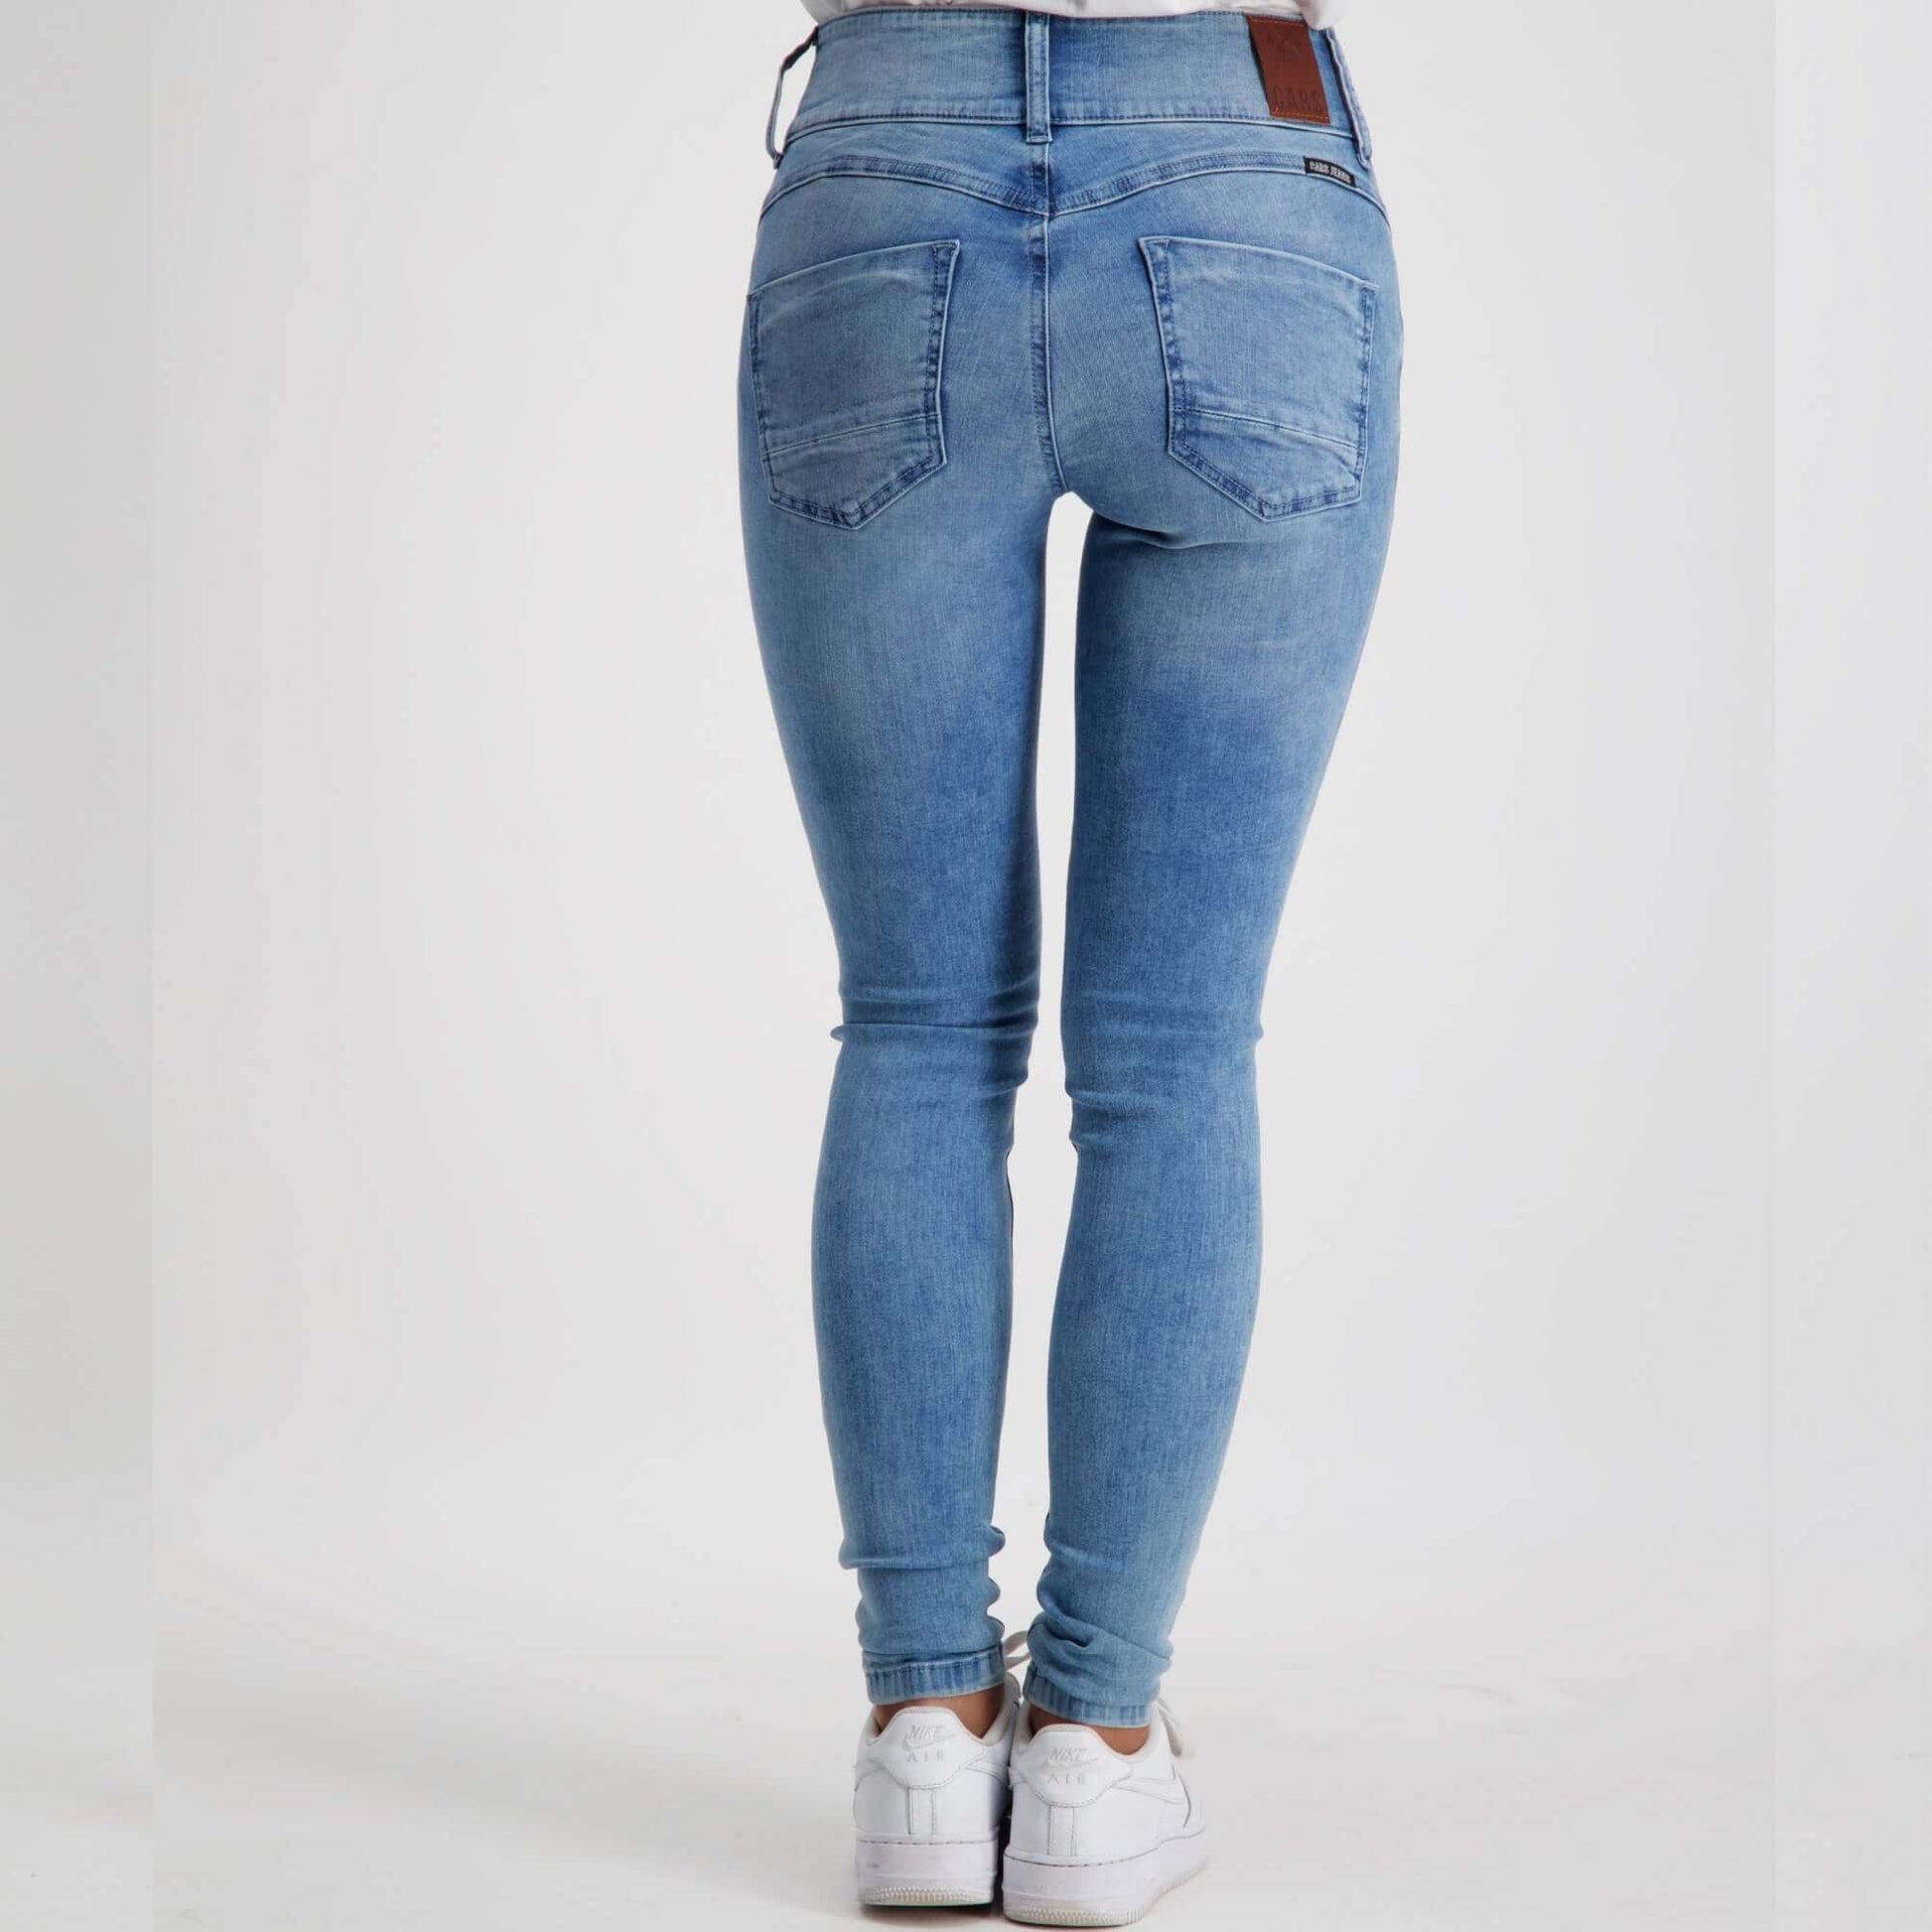 De Cars Jeans Amazing is een comfortabele 5 pocket stretch jeans met hoge taille en een ritssluiting. Smalle pasvorm en een hoge taille.